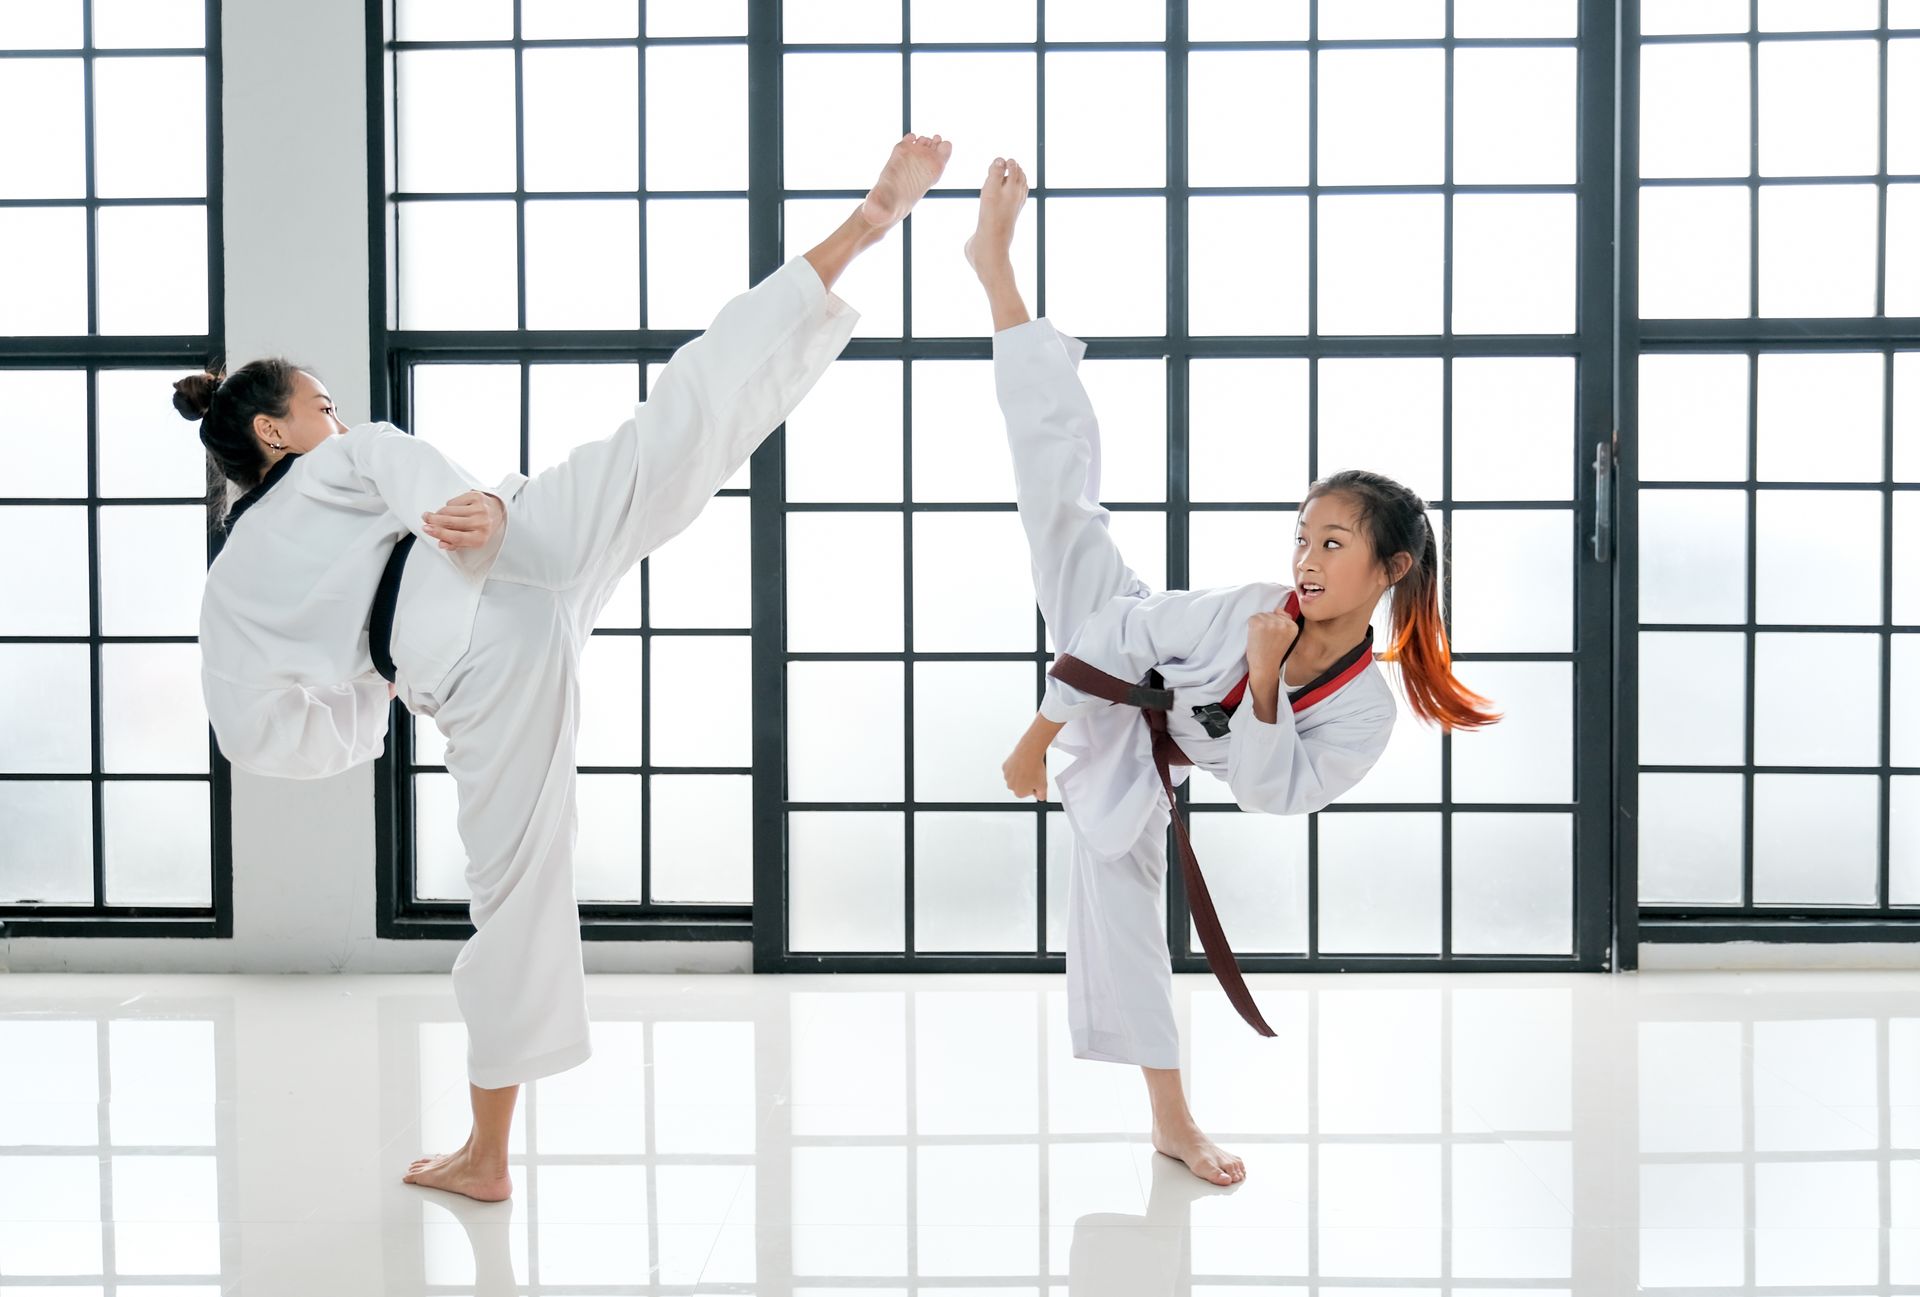 Kids' Martial Arts Classes